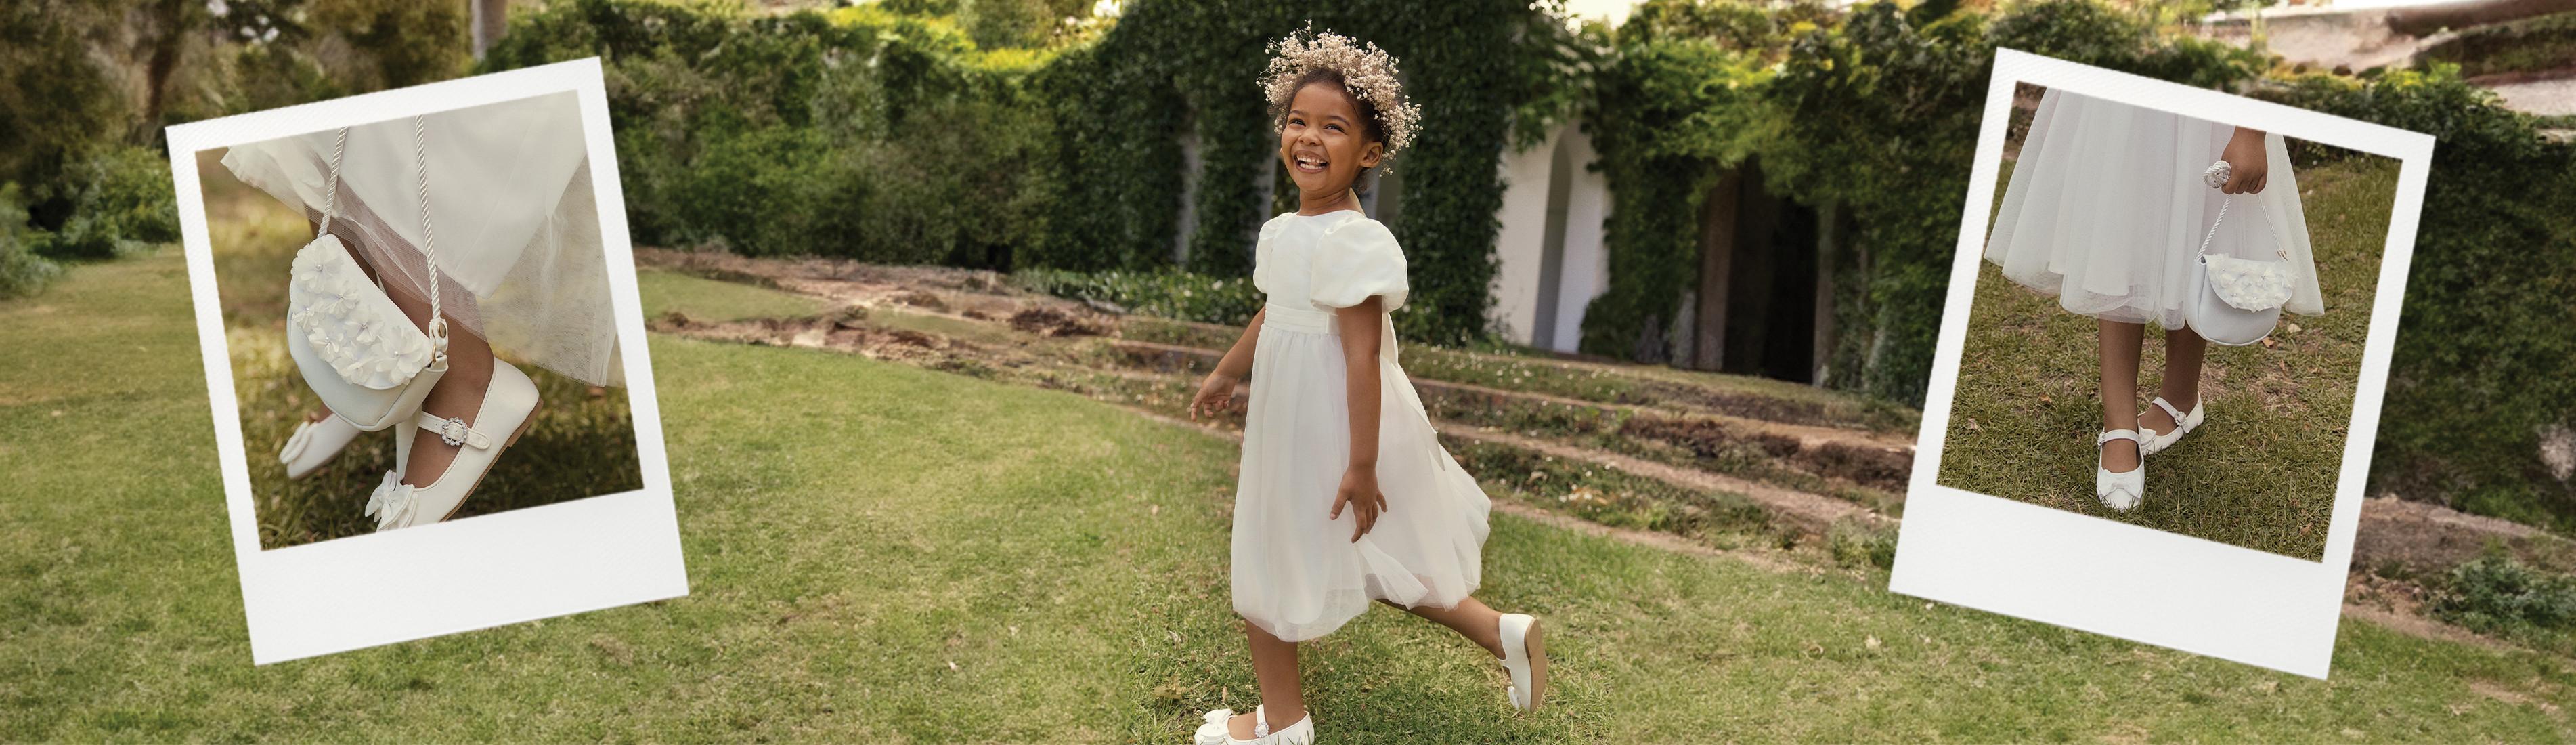 Enfant portant une robe blanche et des chaussures blanches